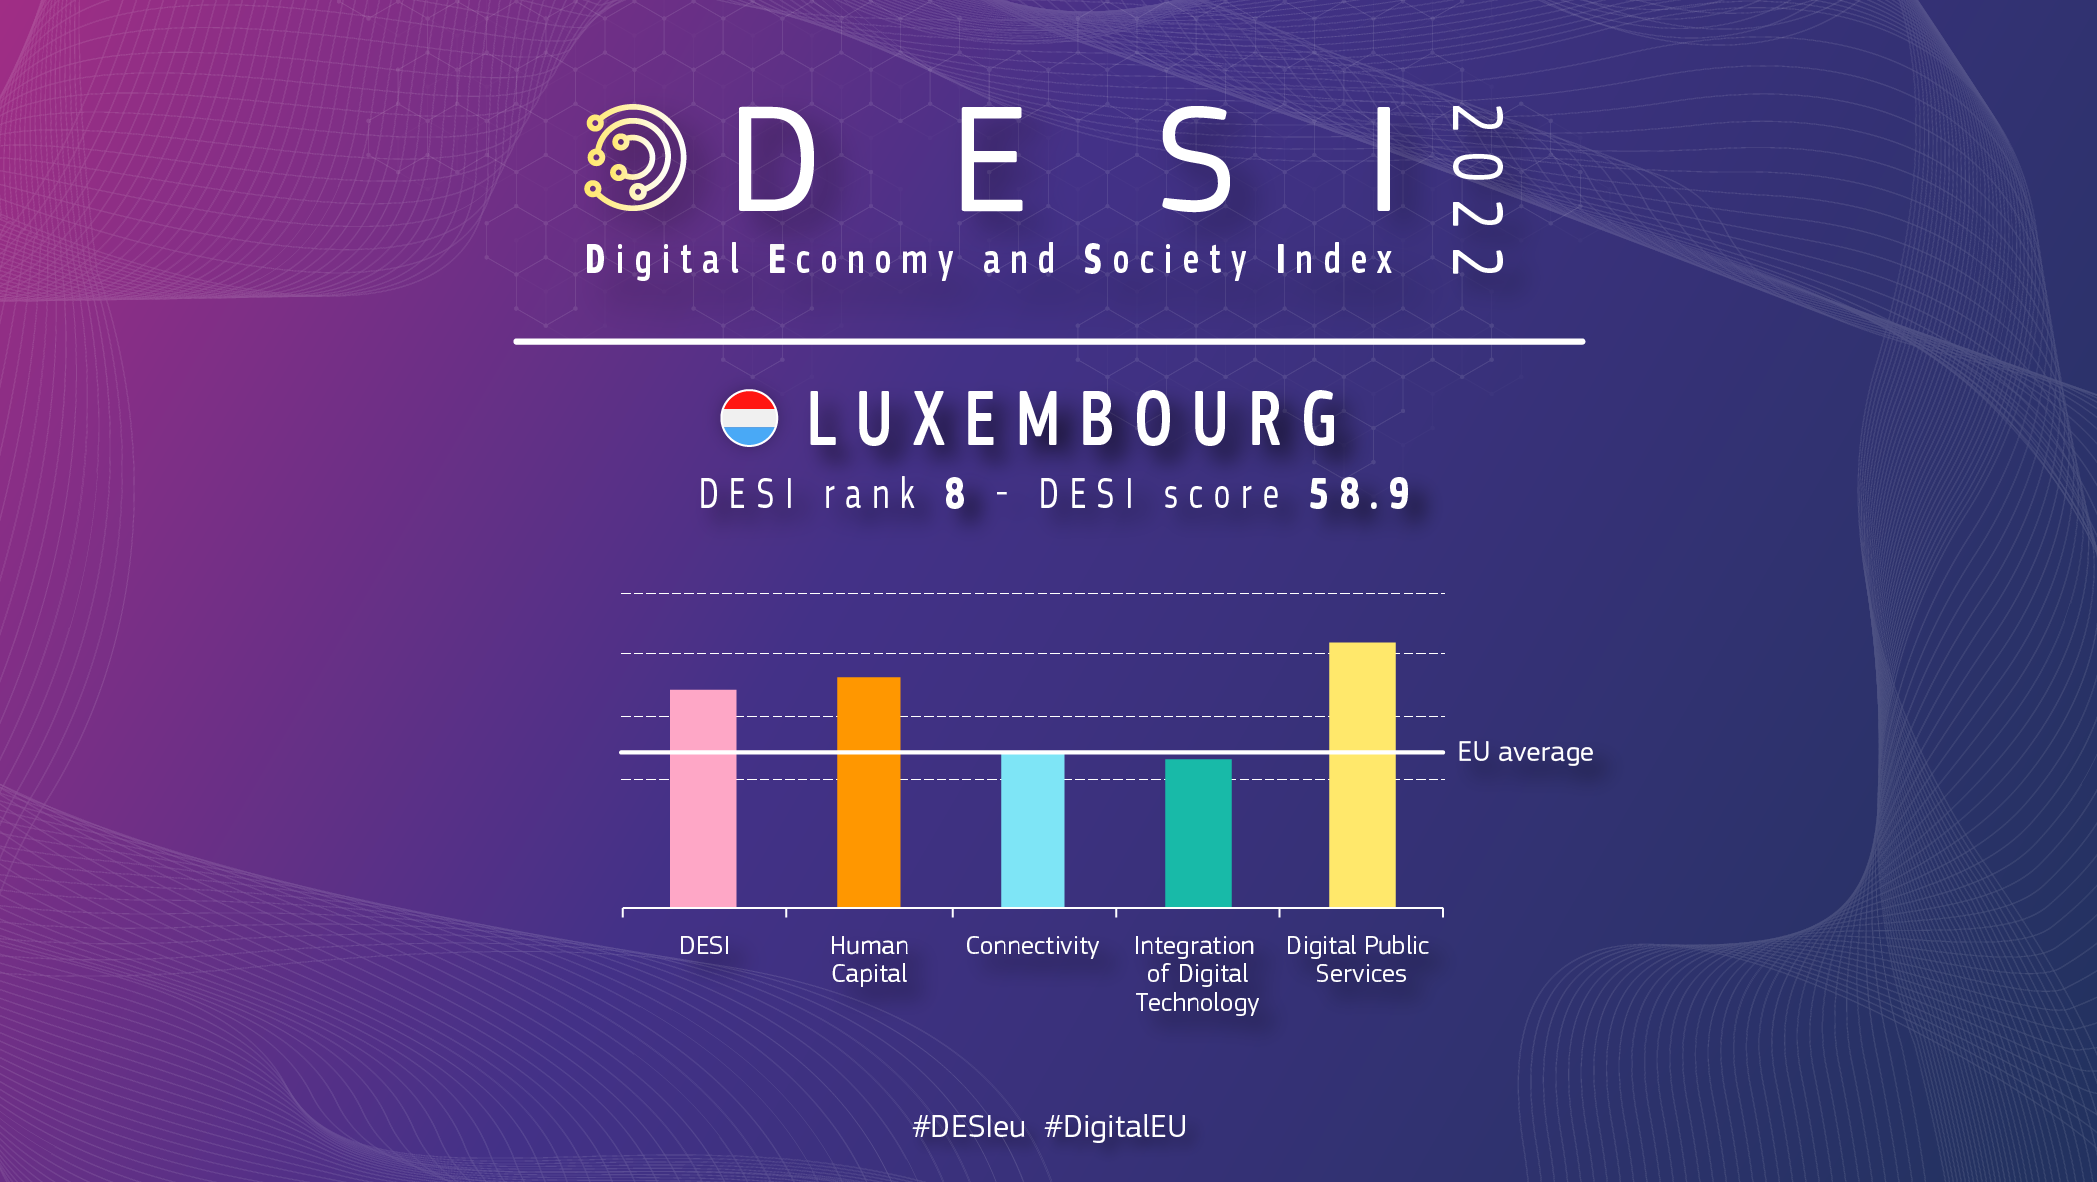 Graficzny przegląd Luksemburga w DESI pokazujący ranking 8 z wynikiem 58,9